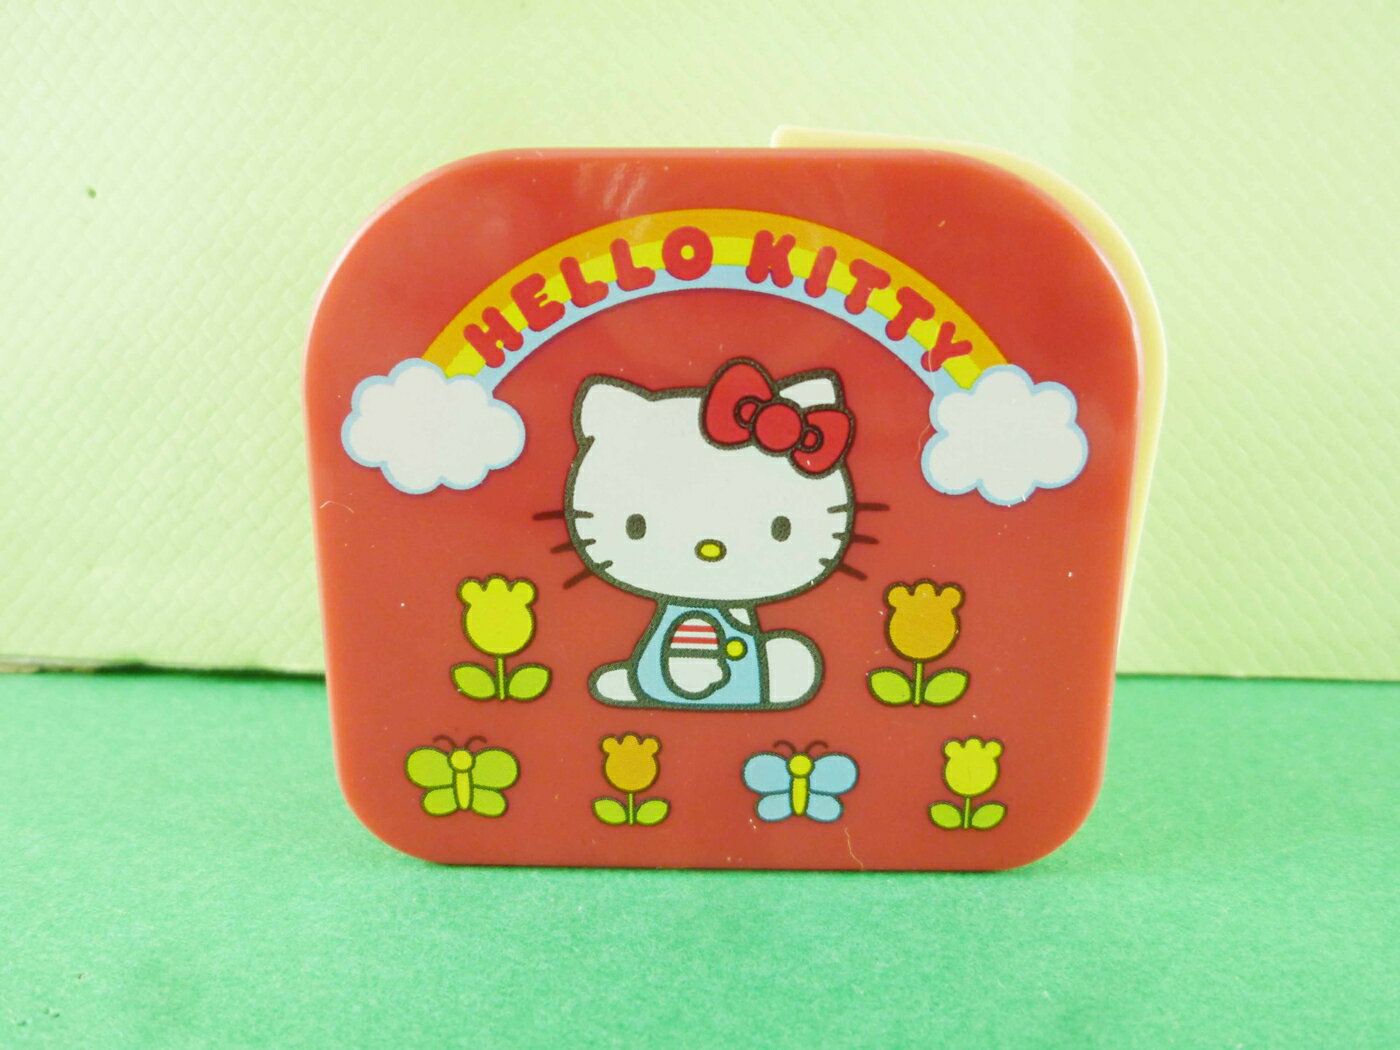 【震撼精品百貨】Hello Kitty 凱蒂貓 頭型膠台-紅金香 震撼日式精品百貨